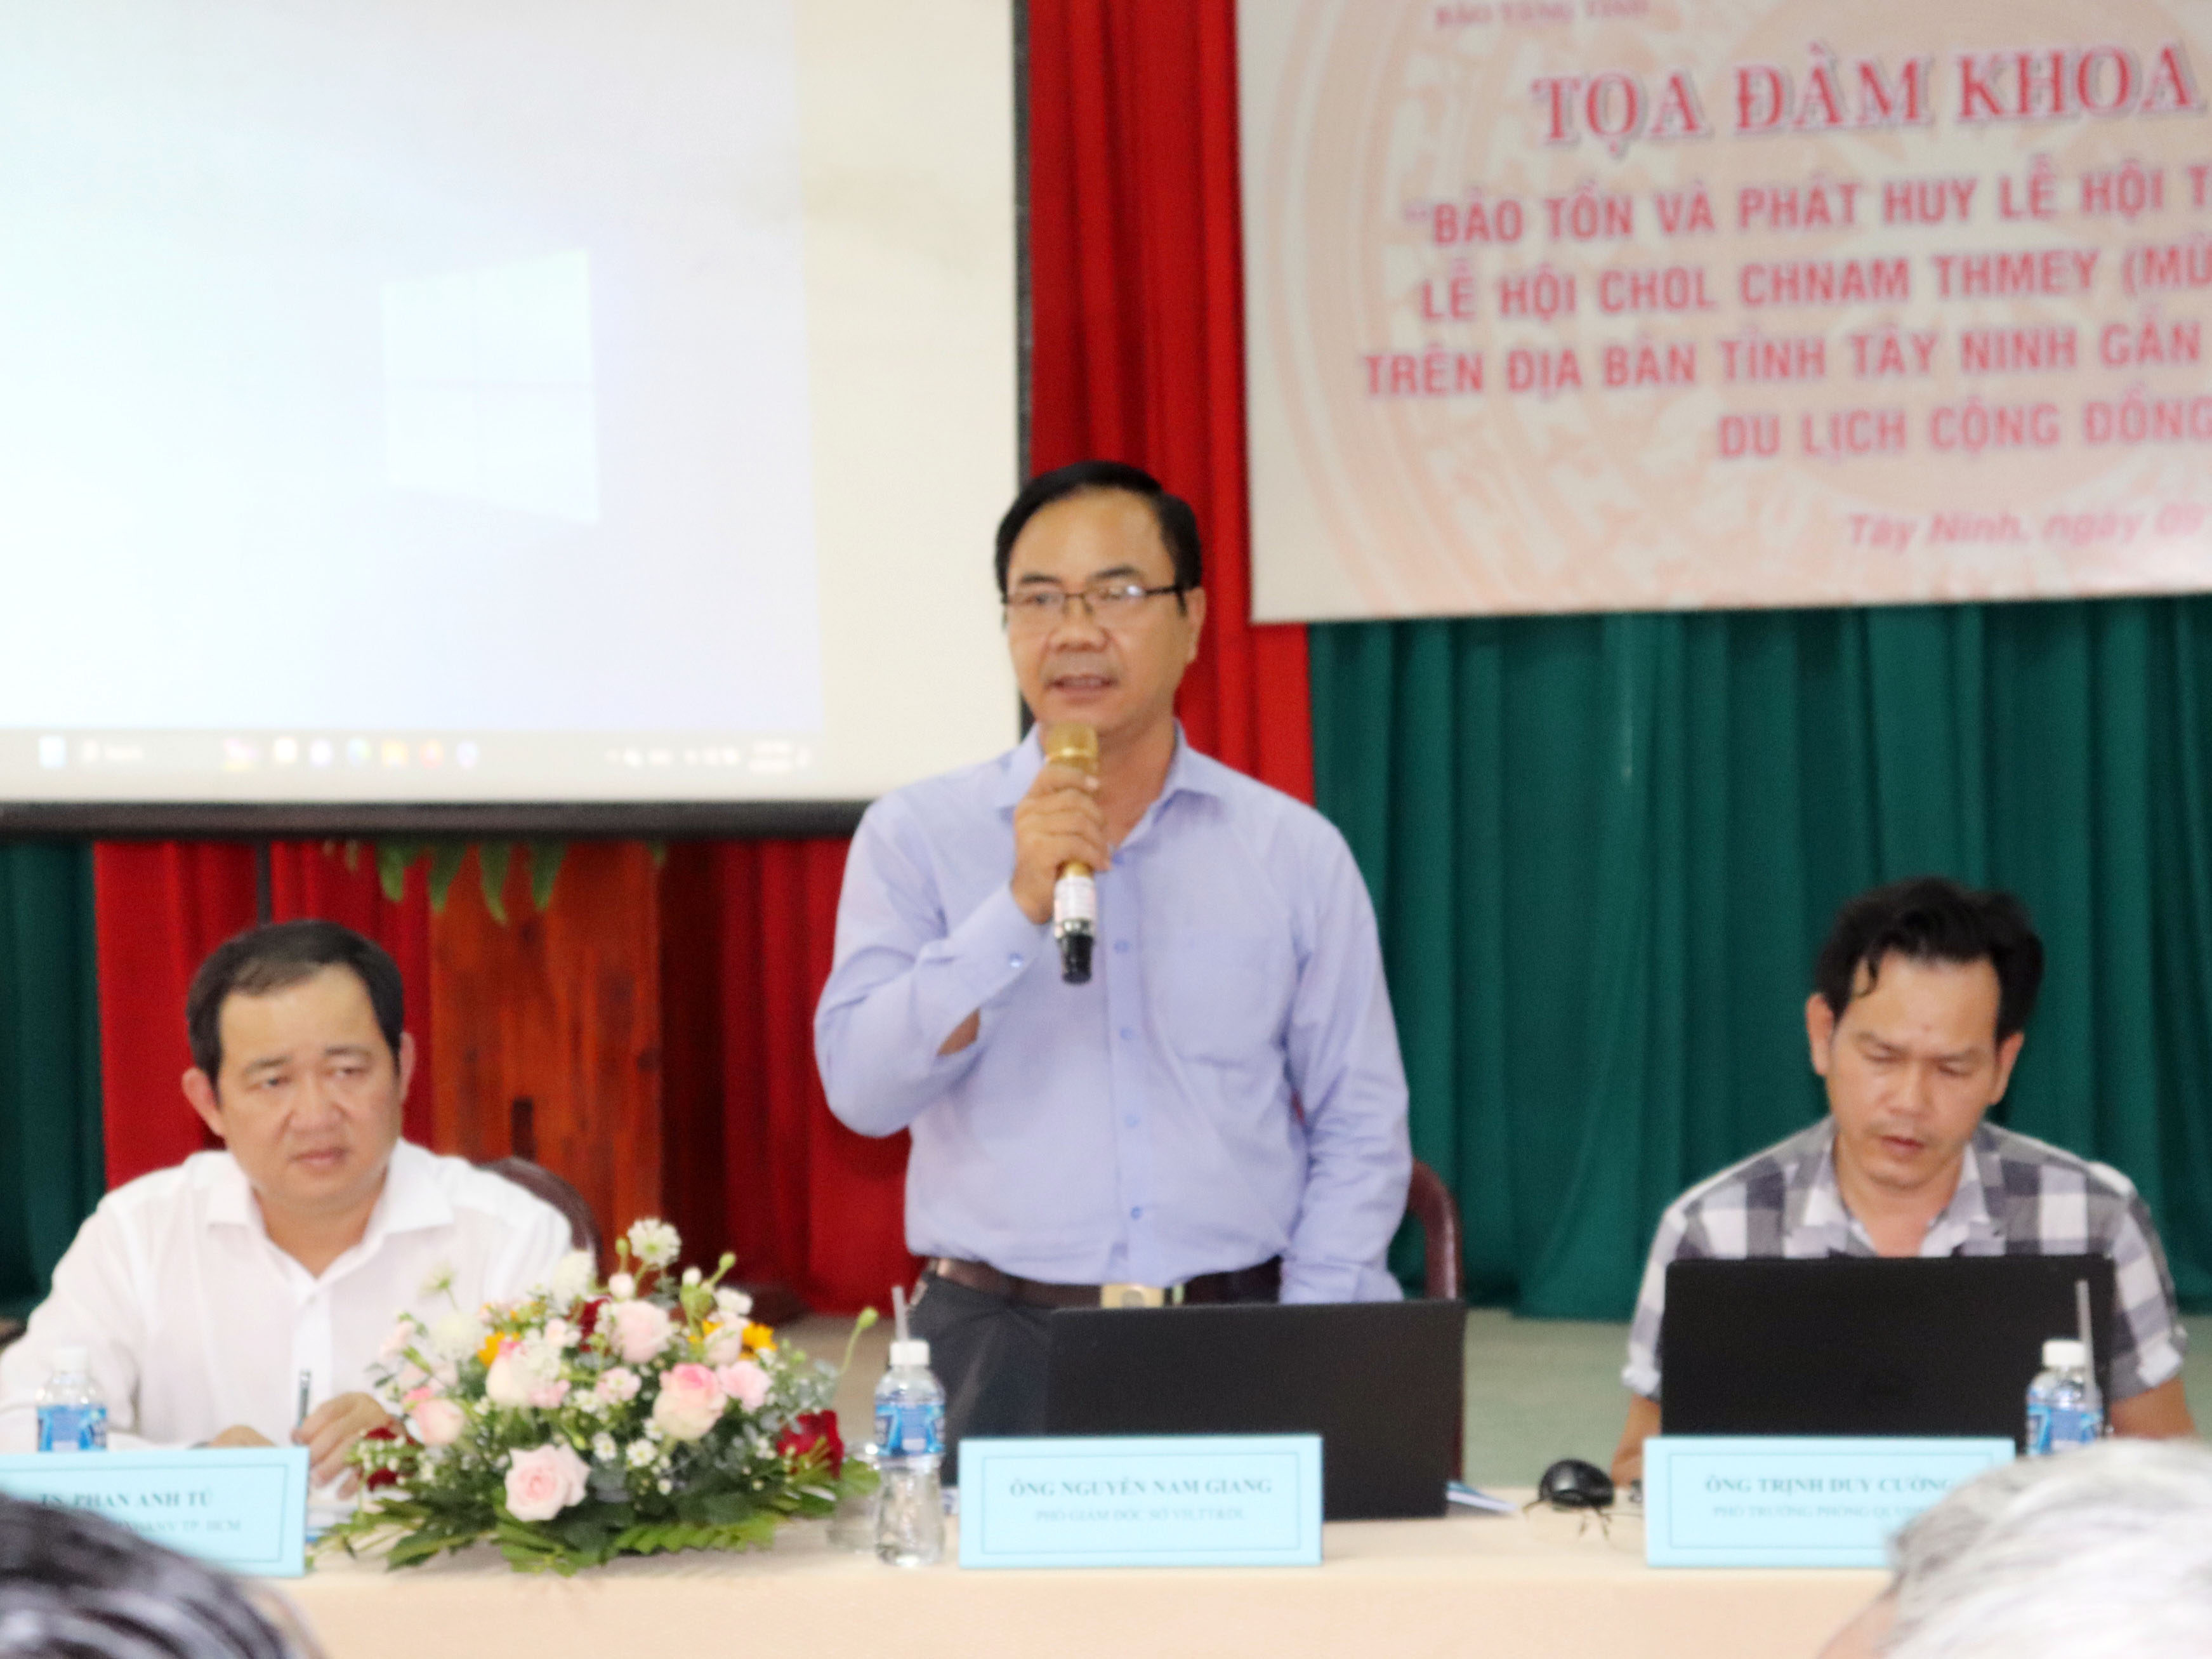 Bảo tàng tỉnh Tây Ninh tổ chức tọa đàm khoa học